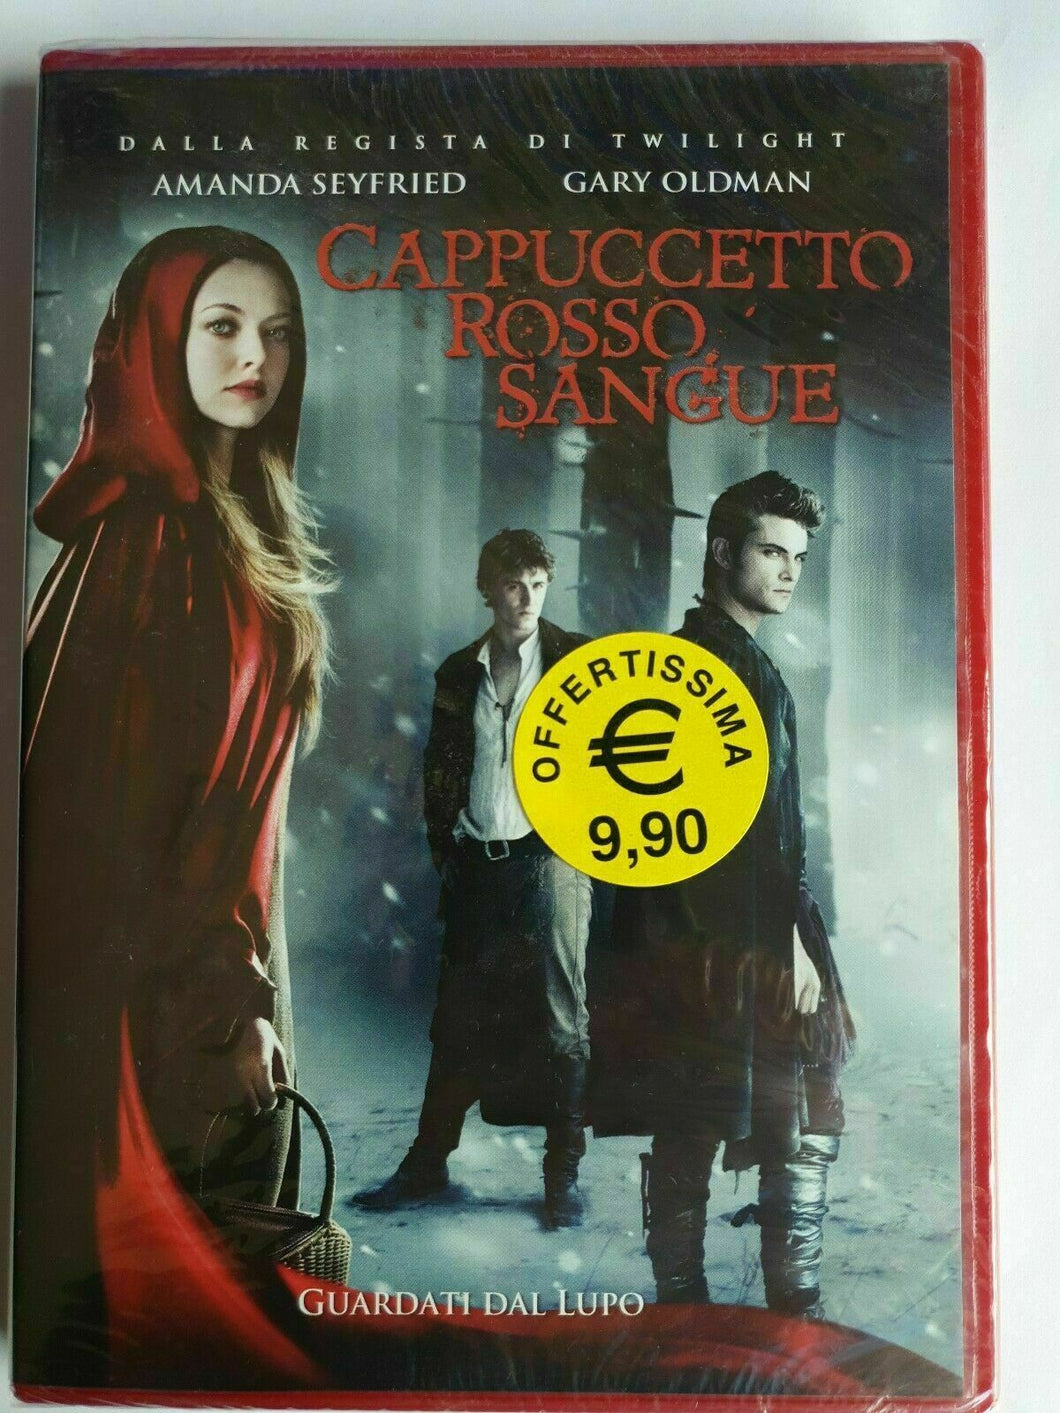 Cappuccetto Rosso sangue (2011) DVD